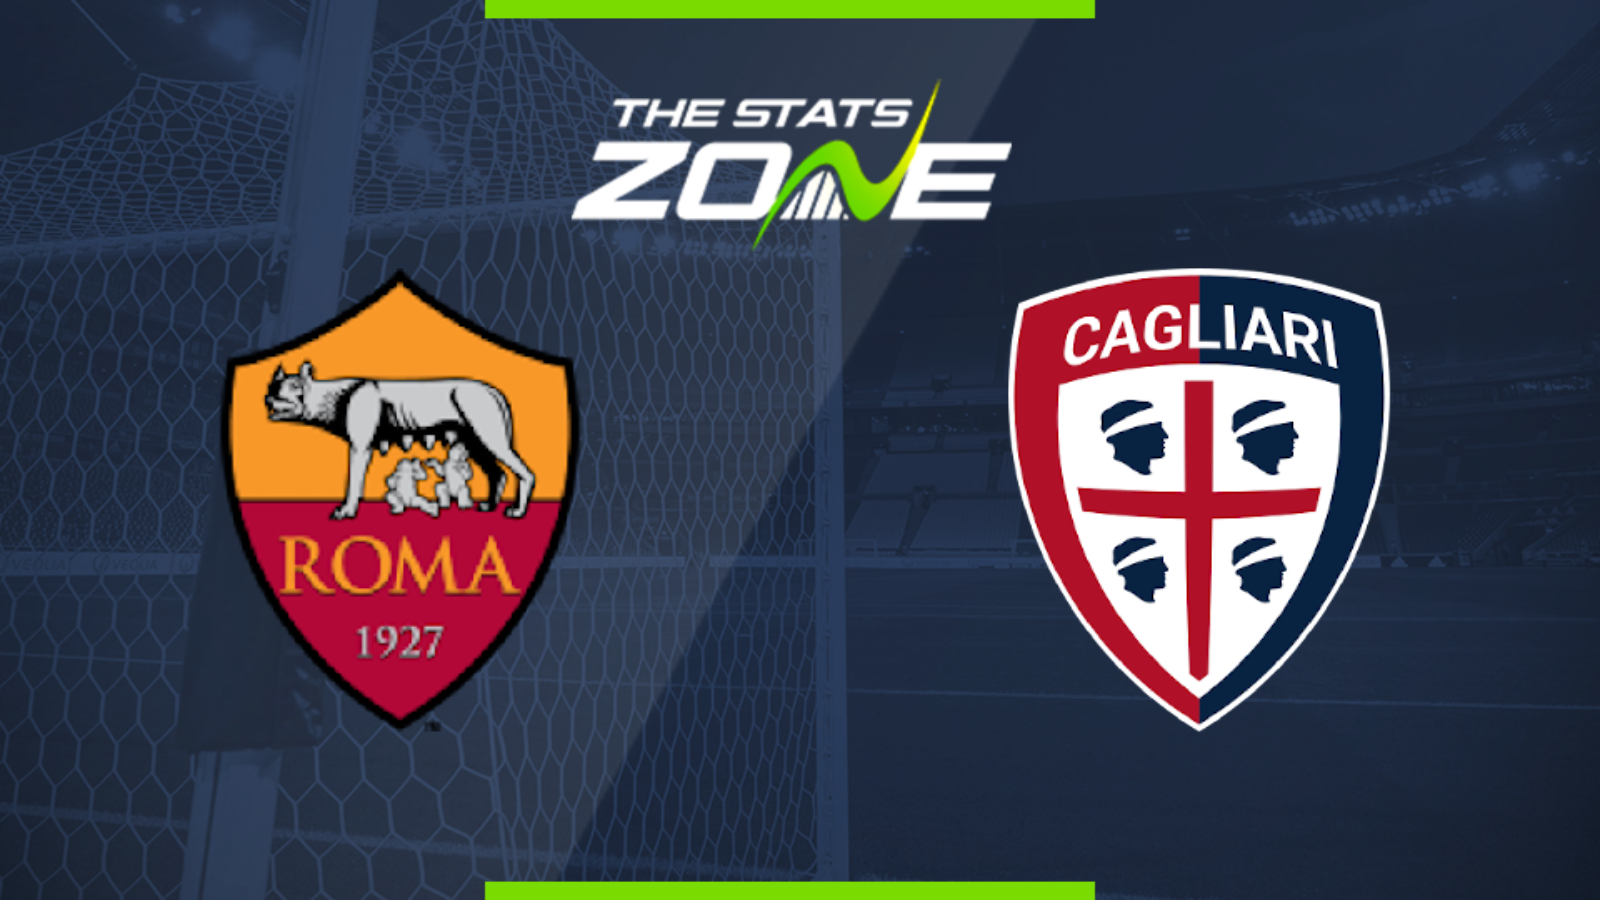 2019-20 Serie A – Roma vs Cagliari Preview & Prediction - The Stats Zone